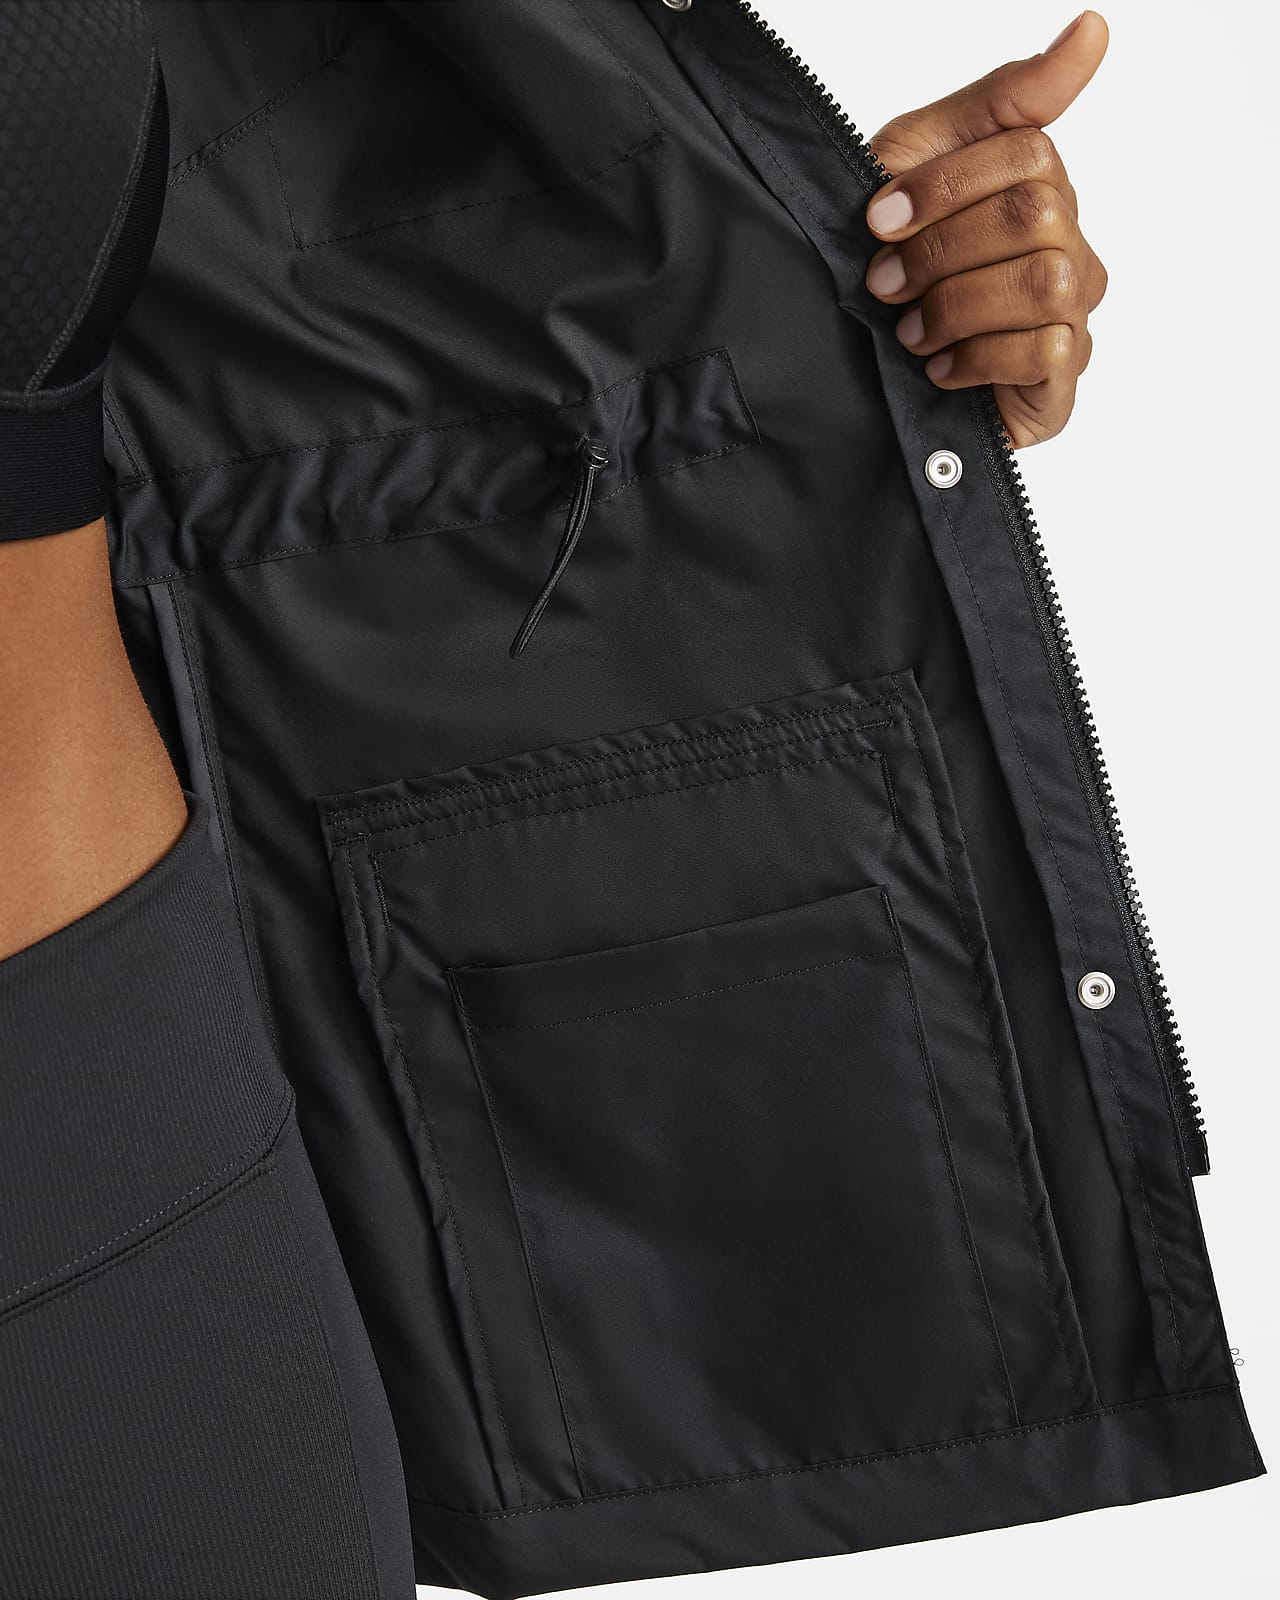 Nike Sportswear Women's M65 Woven Jacket